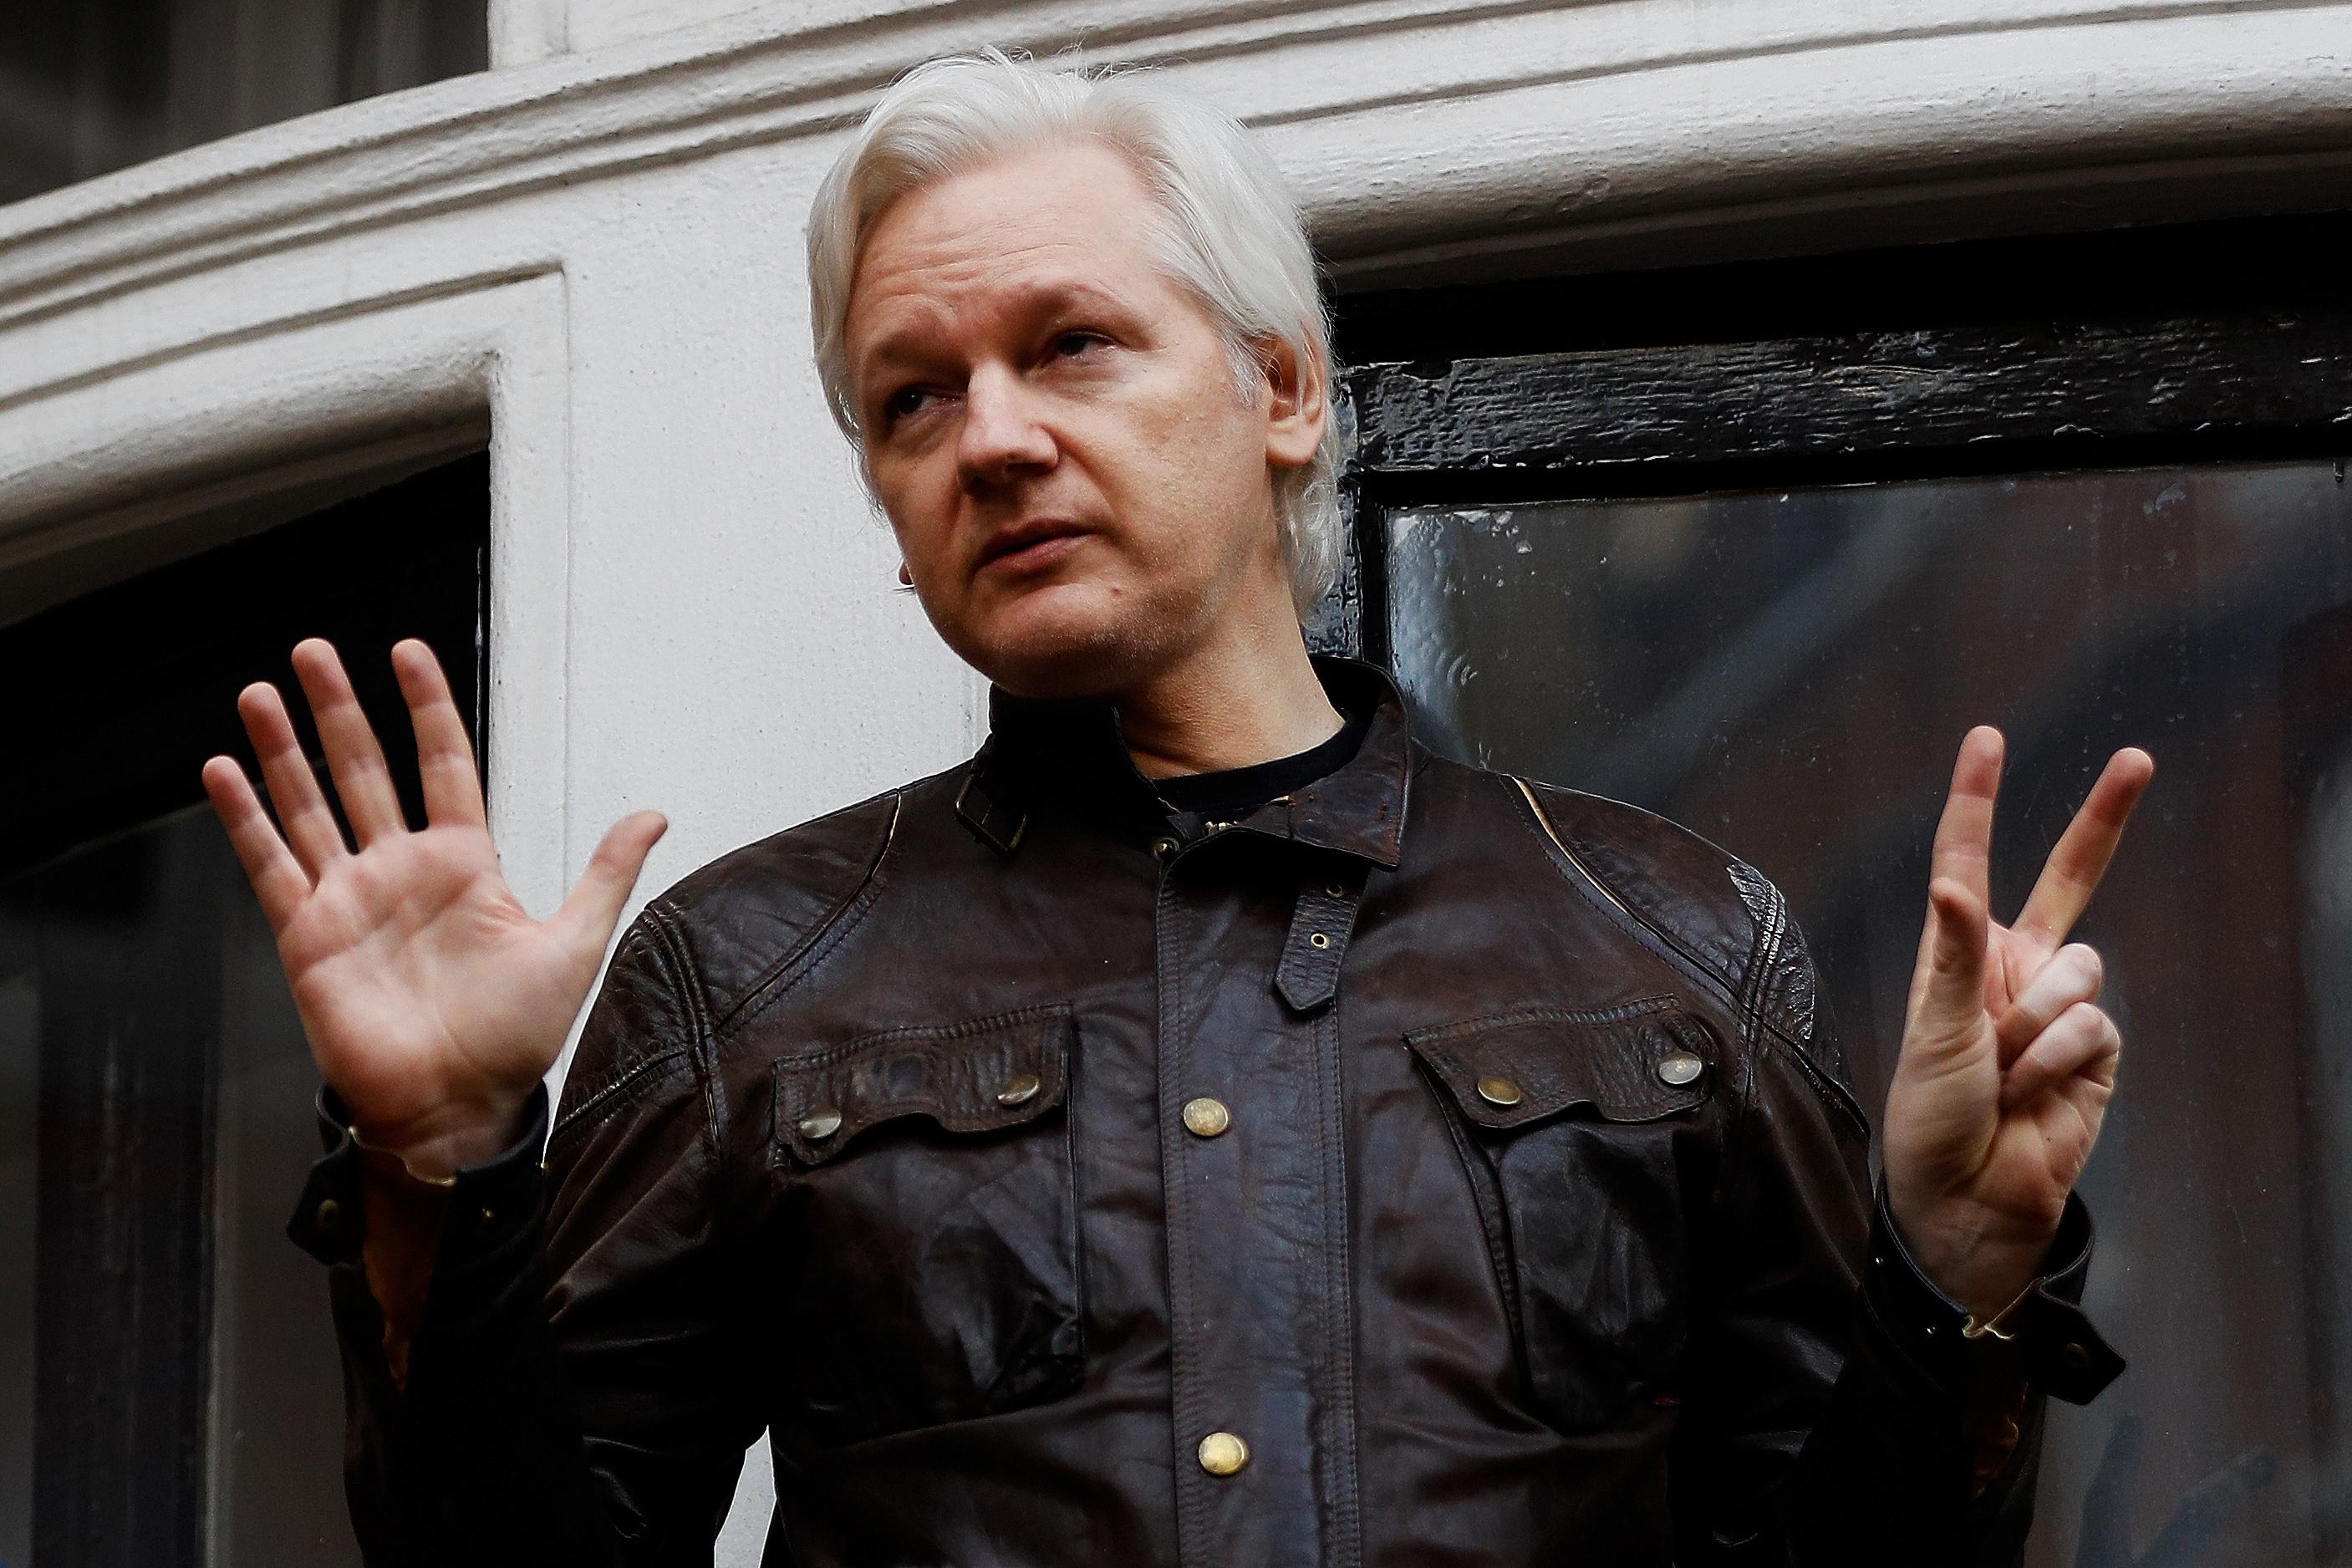 Nhà sáng lập Wikileak sẽ được về nước nếu yêu cầu dẫn độ bị bác